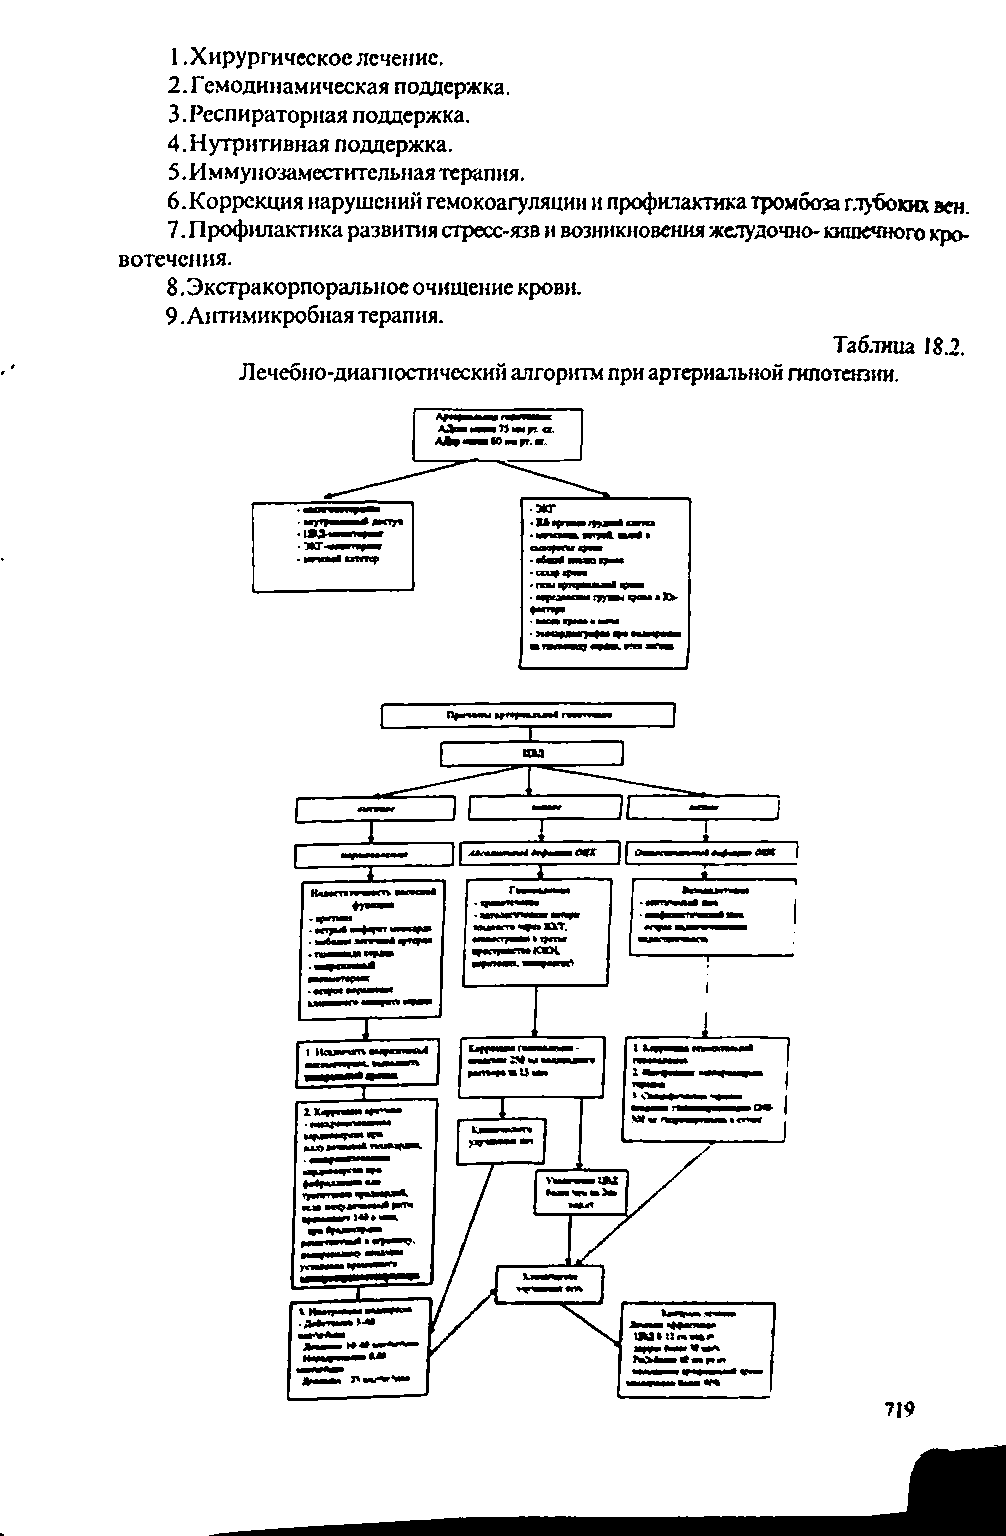 Таблица 18.2. Лечебно-диагностический алгоритм при артериальной гипотензии.